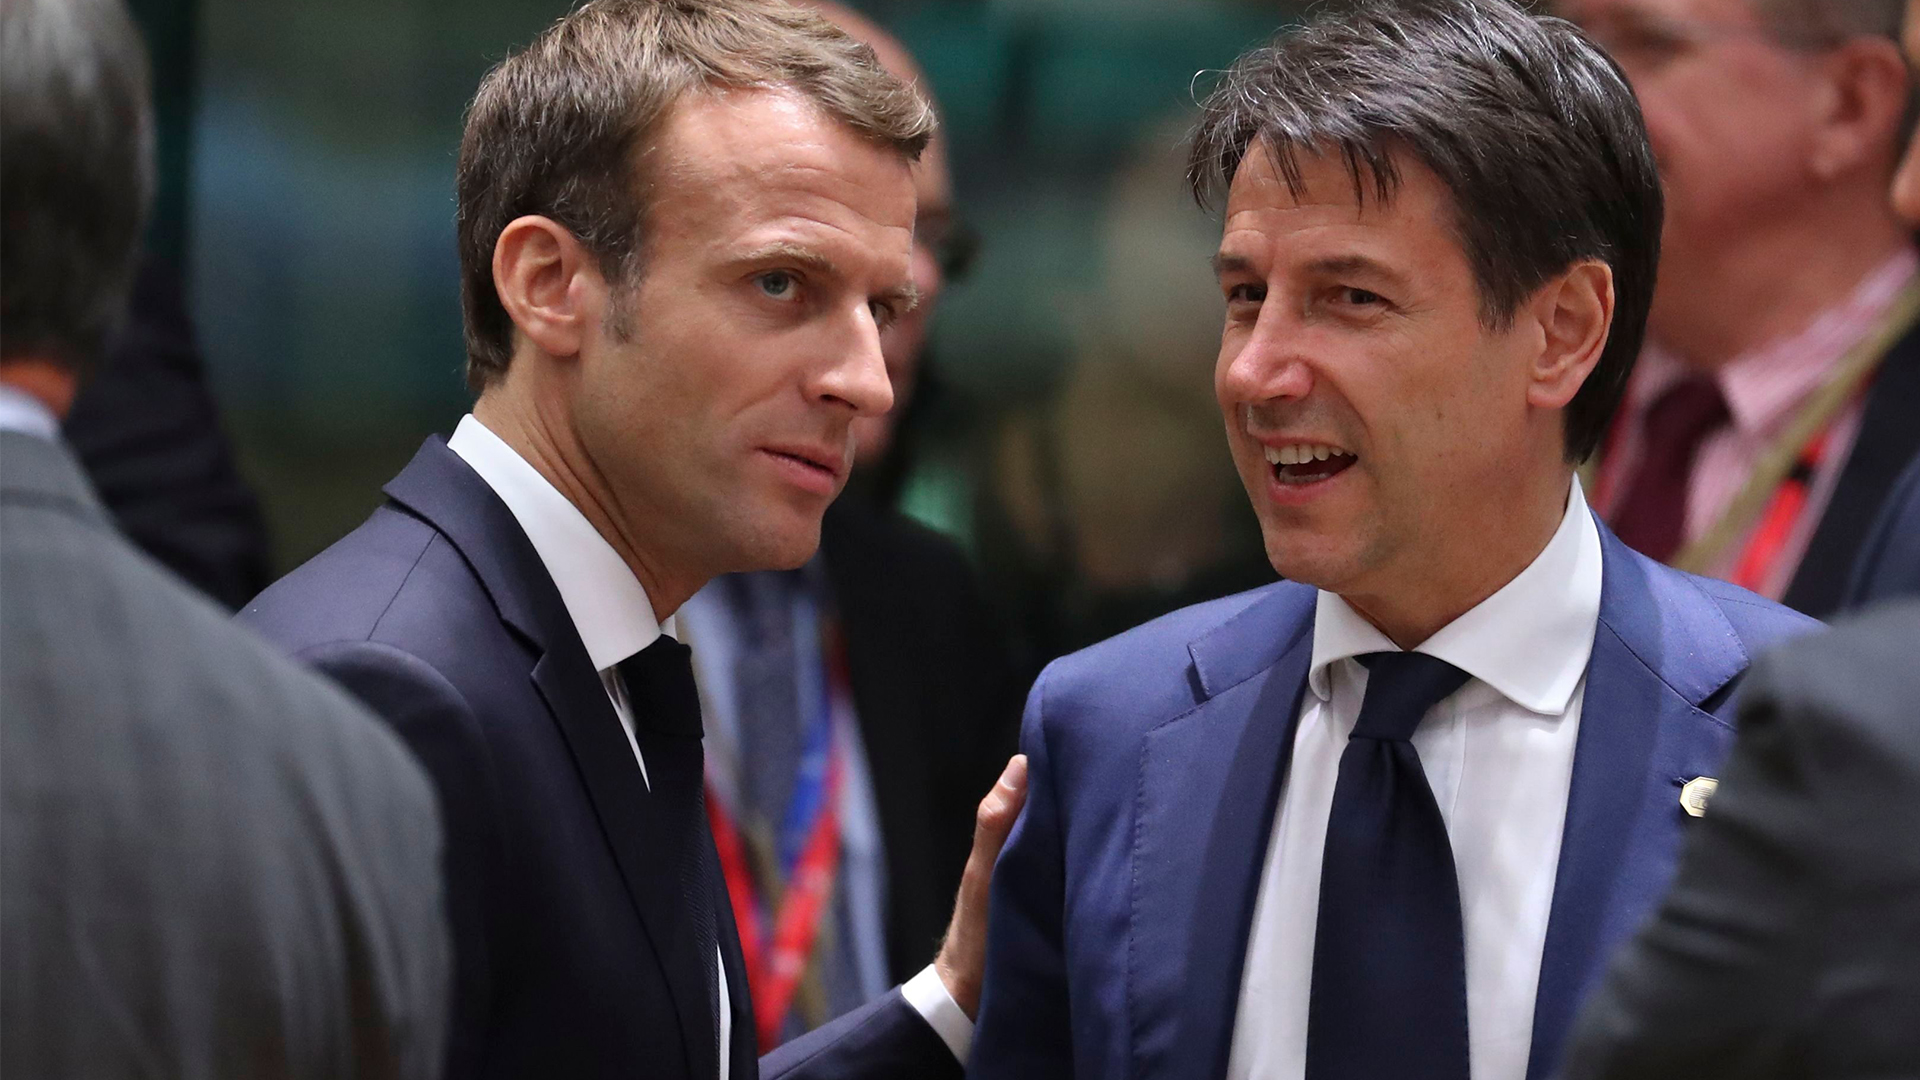 Emmanuel Macron und Giseppe Conte | Bildquelle: OLIVIER HOSLET/EPA-EFE/REX/Shutt